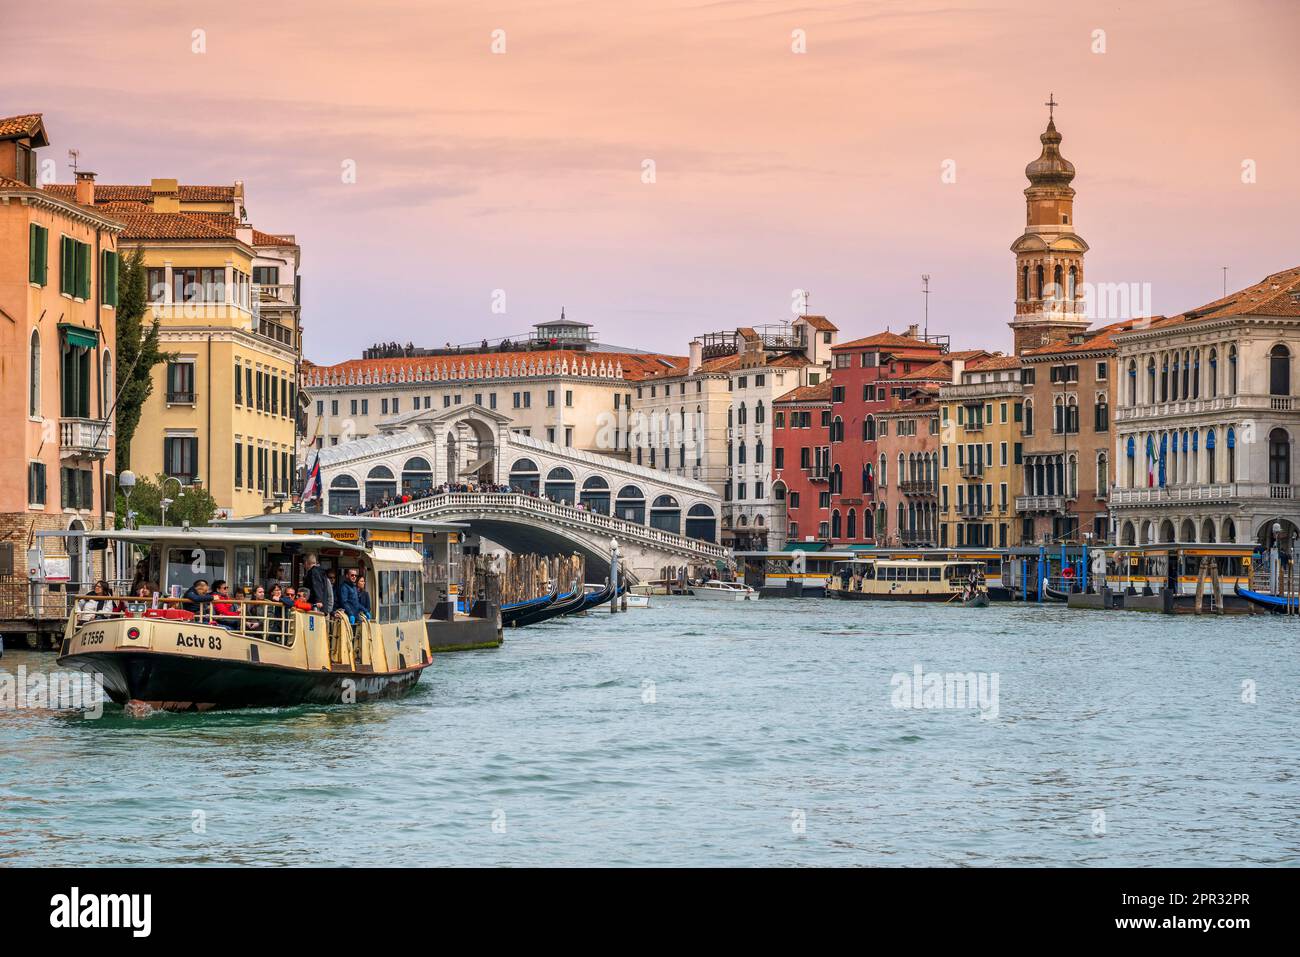 Grand Canal and Rialto Bridge (Ponte di Rialto) at sunset, Venice, Veneto, Italy Stock Photo